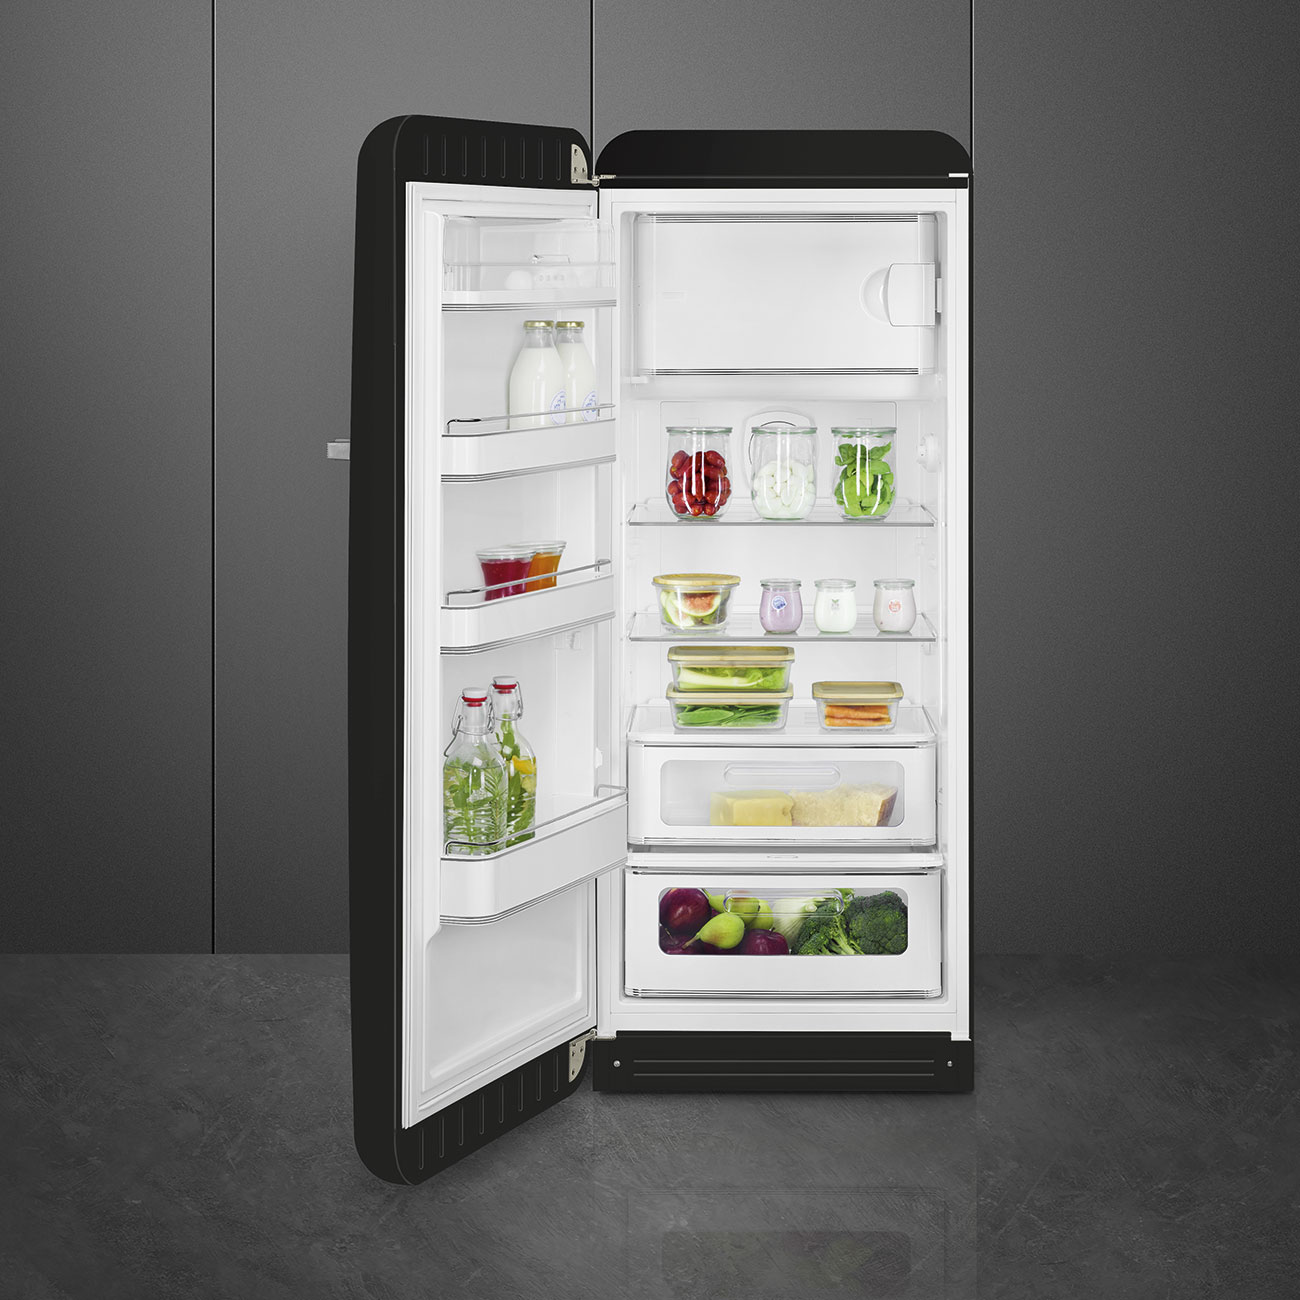 Black refrigerator - Smeg_3